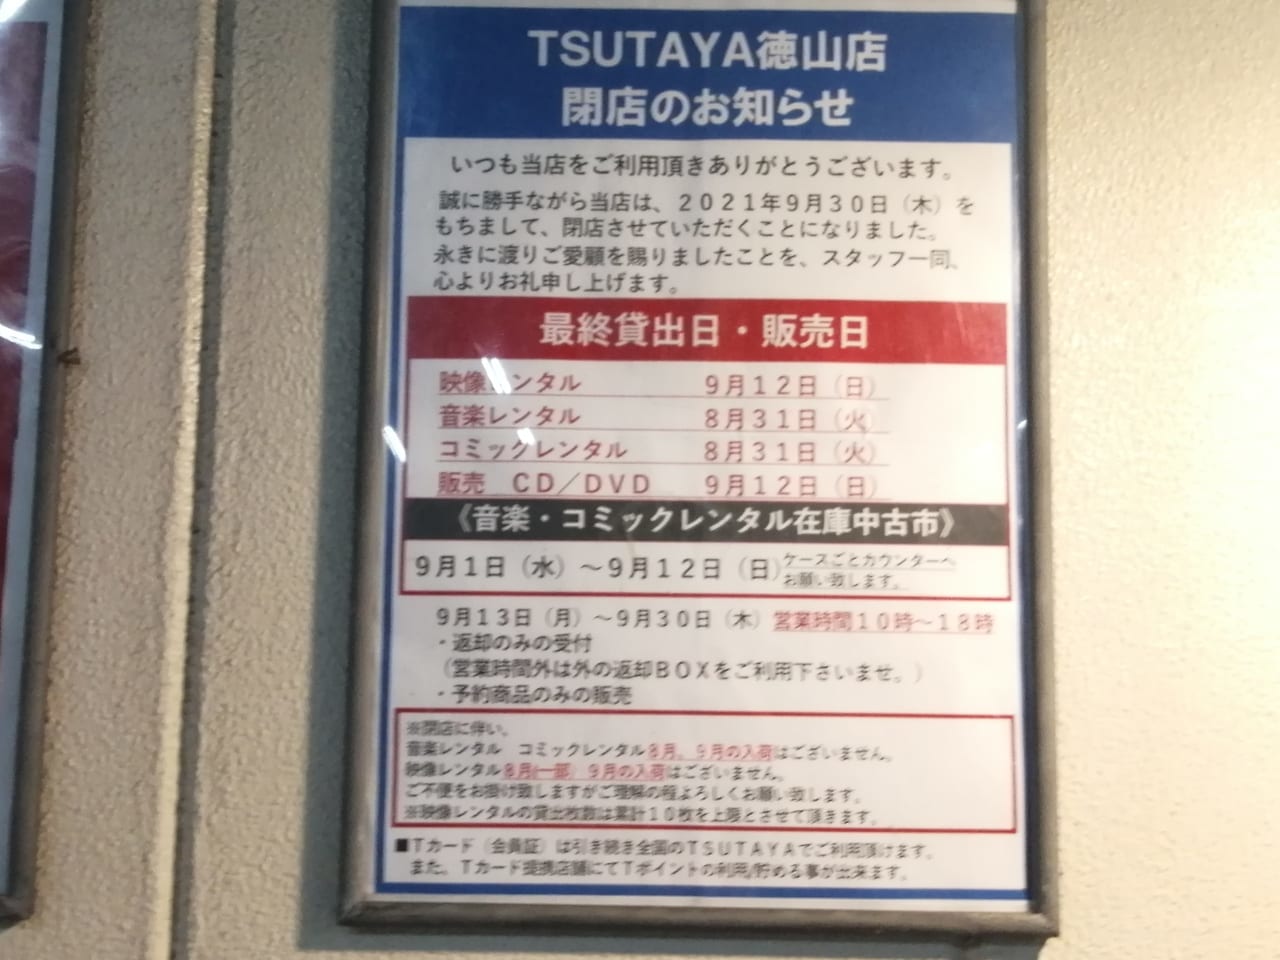 周南市 えっ 本当ですか Tsutaya徳山店が9月30日をもって閉店 店内はすごいことに 号外net 周南市 下松市 光市